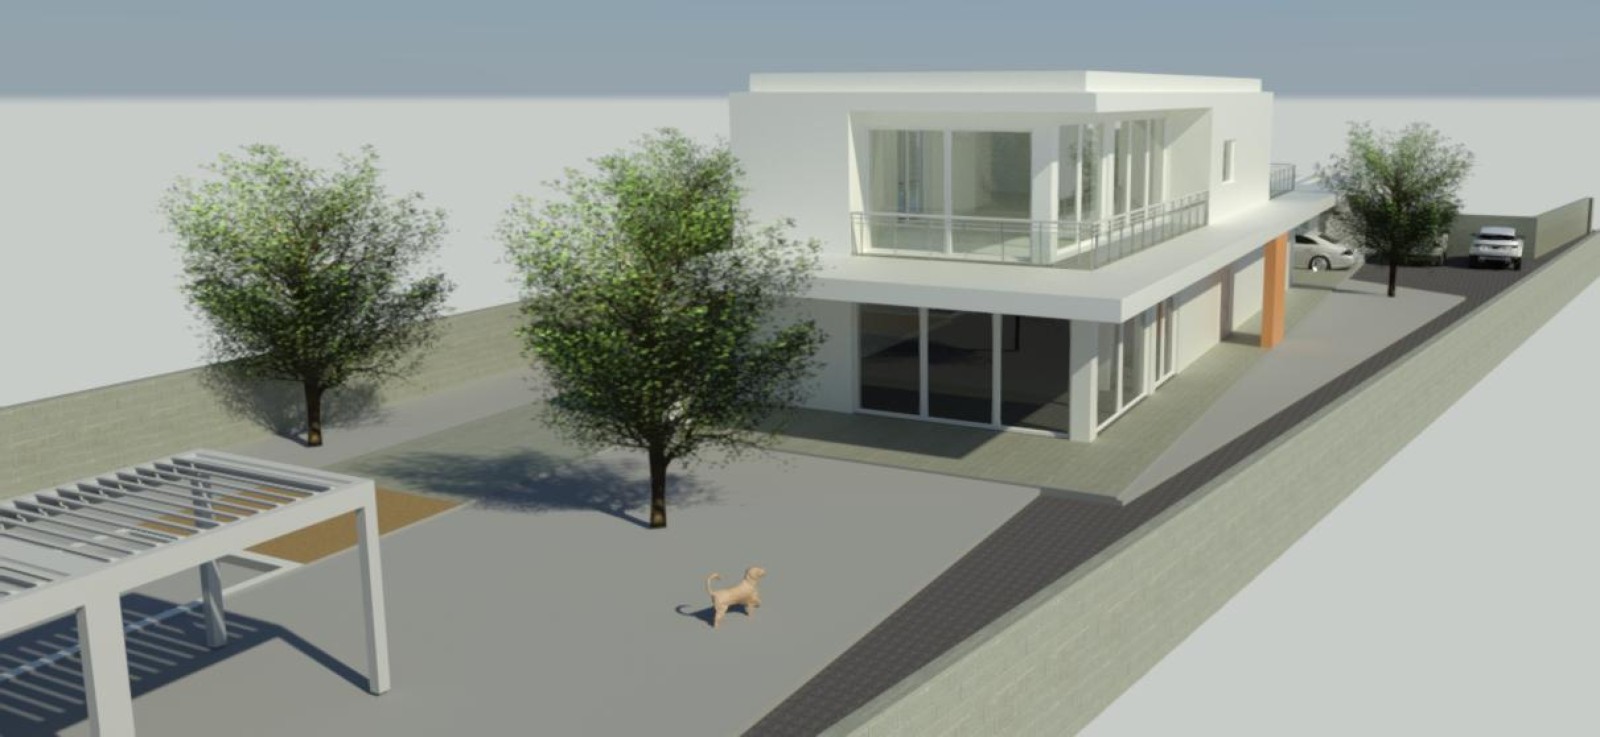 Neues Haus mit 5 Schlafzimmern, zu verkaufen, in ruhiger Lage, Águeda, Portugal_247939